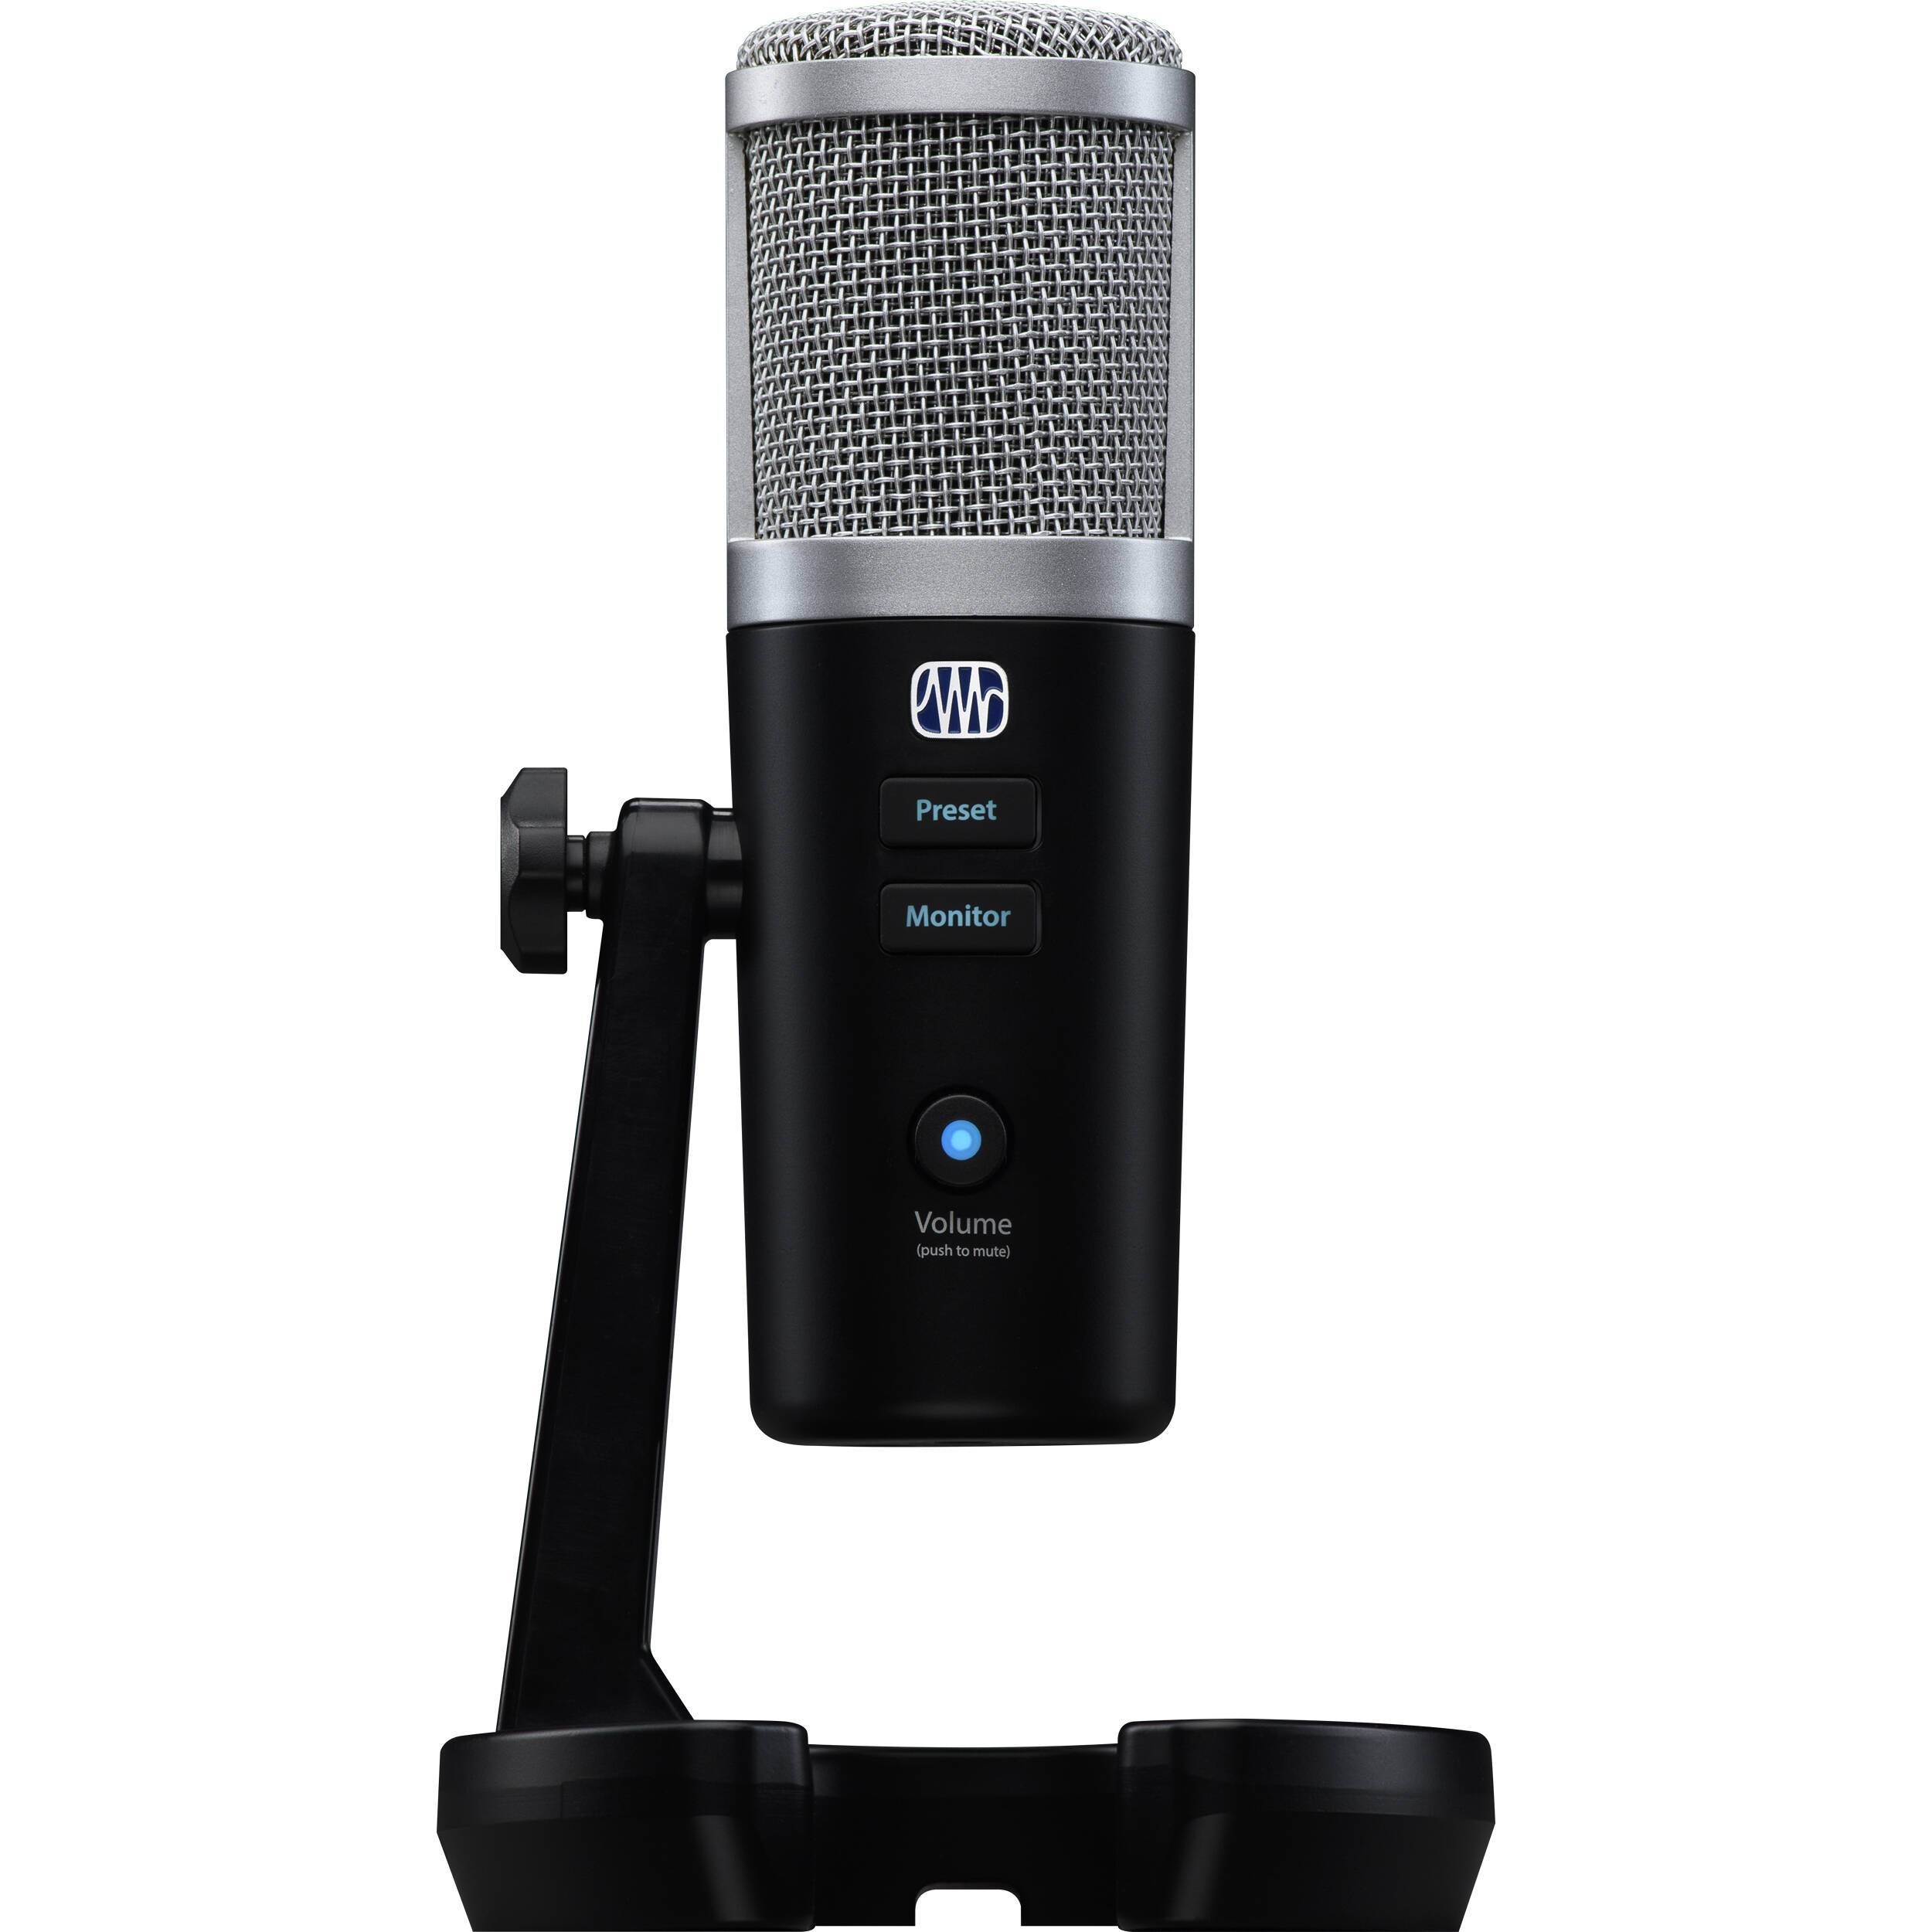 PreSonus Revelator Micrófono USB Multipatrón con Procesamiento Vocal Studio Live Micrófonos USB PreSonus 